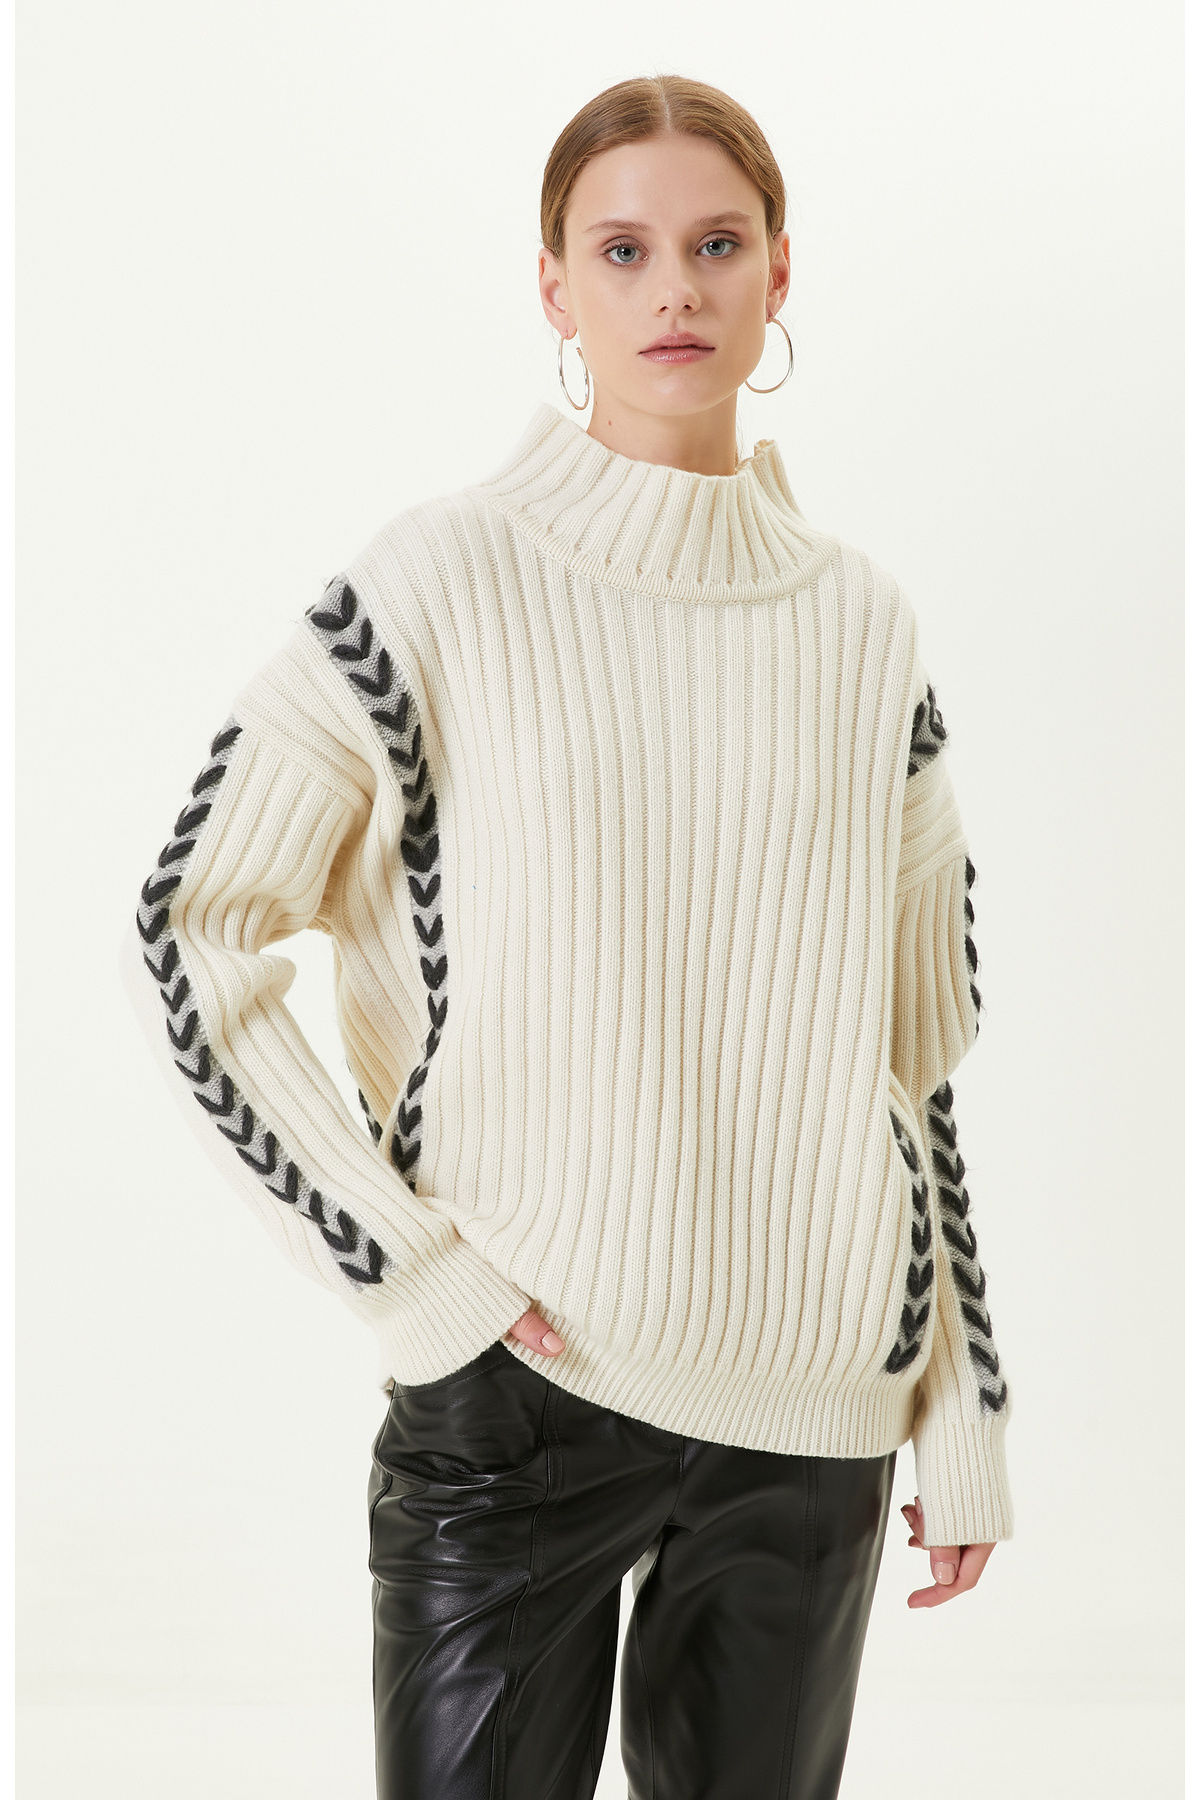 Трикотажный свитер с высоким воротником цвета экрю Network, экрю